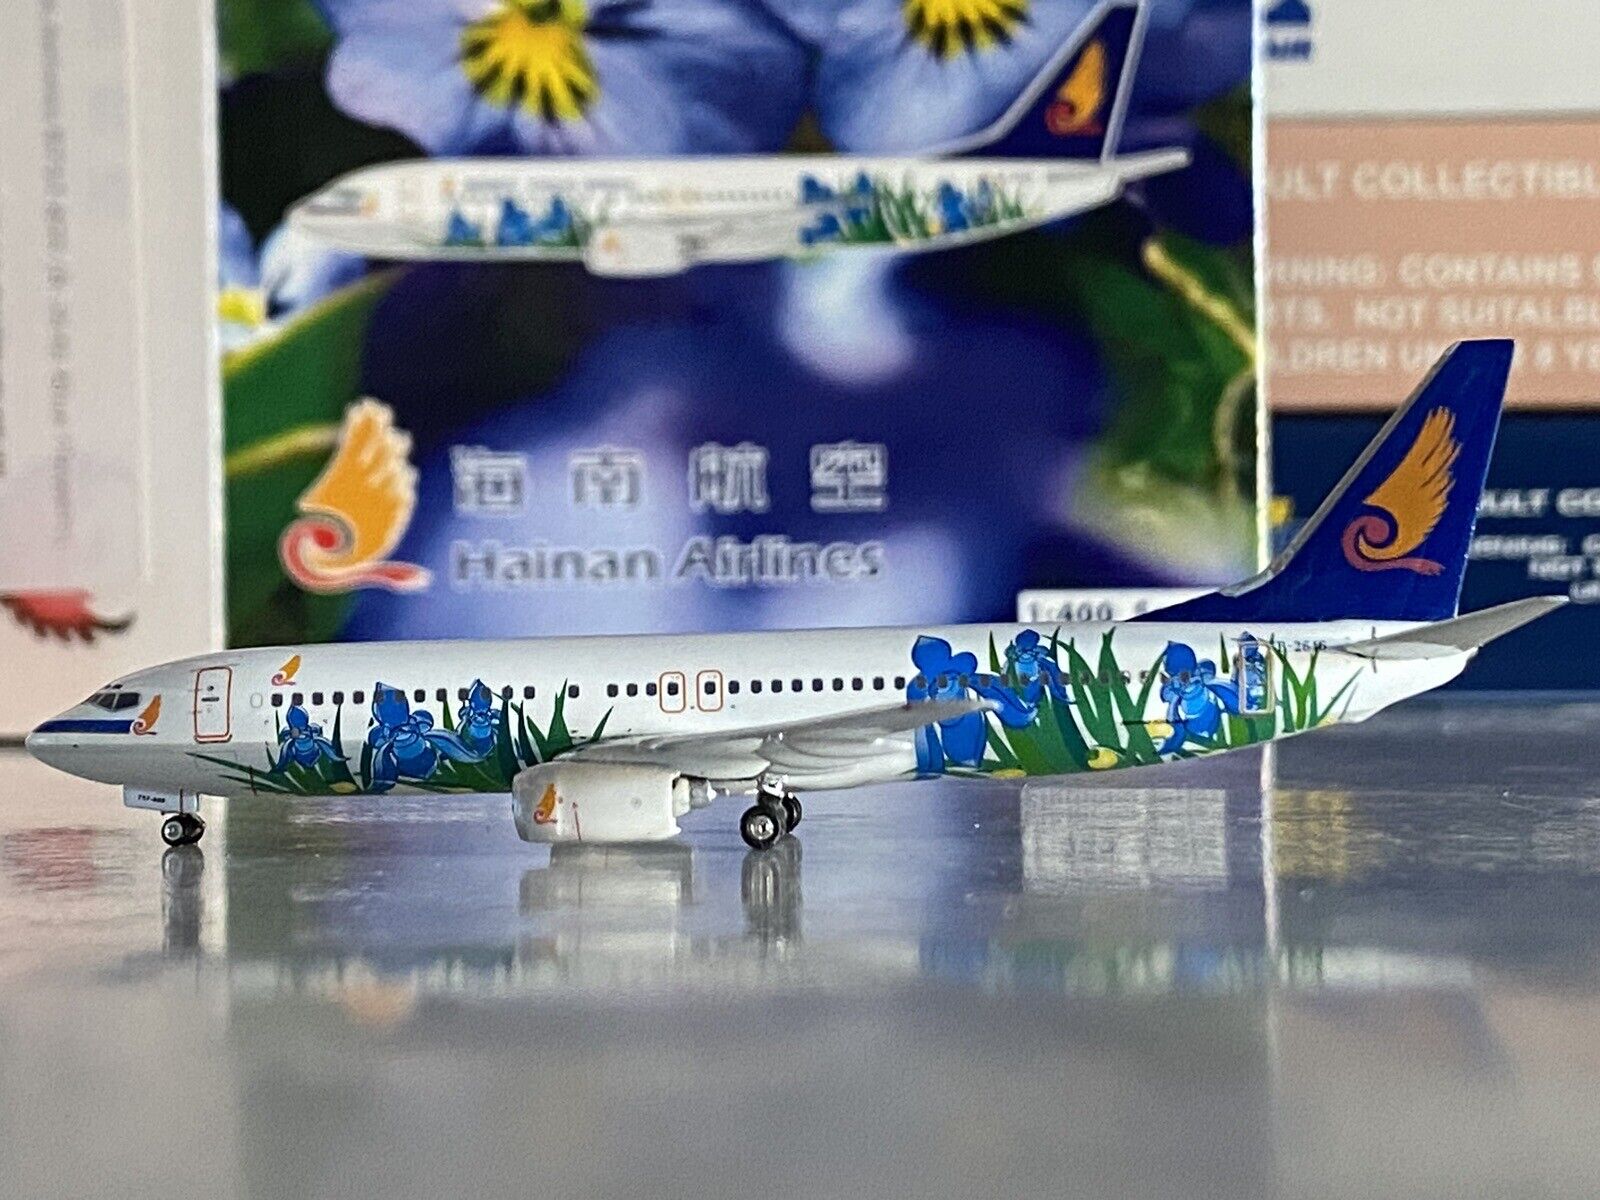 Phoenix Models Hainan Airlines Boeing 737-800 1:400 B-2646 Blue Flowers